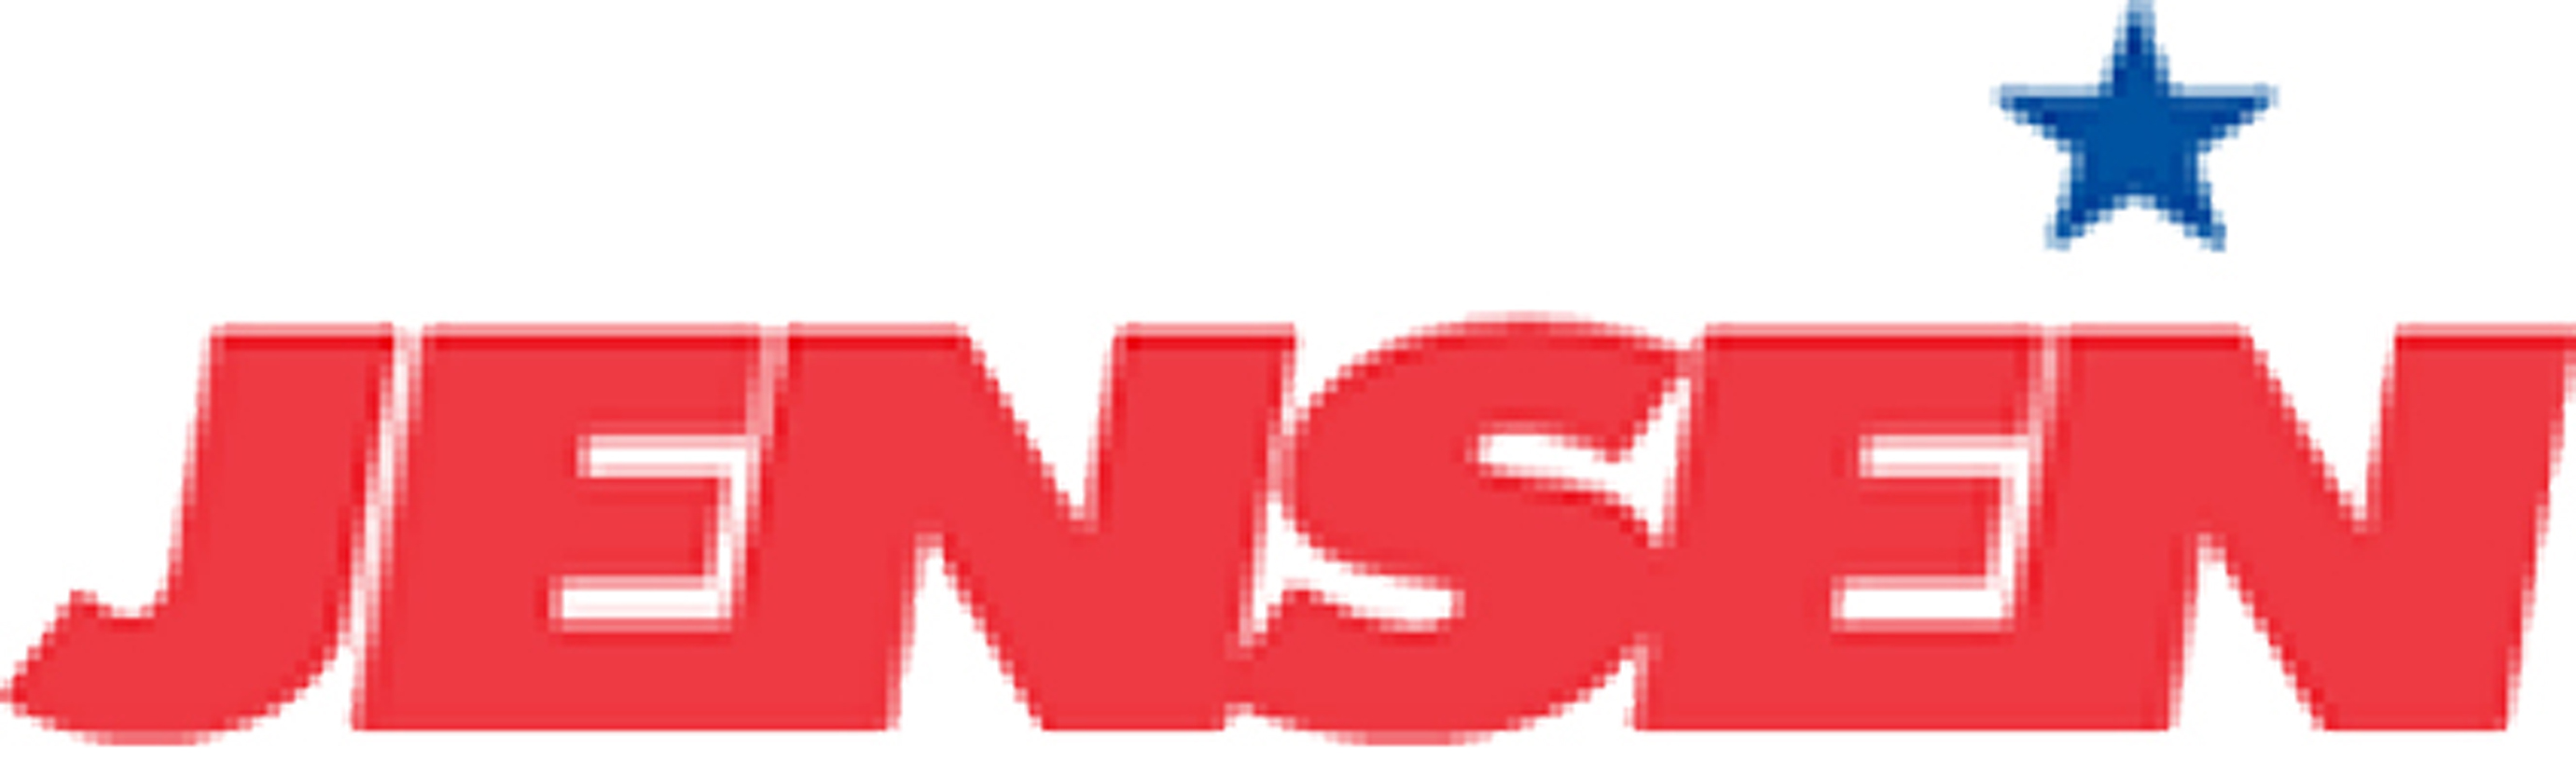 Jensen Distribution Logo photo - 1